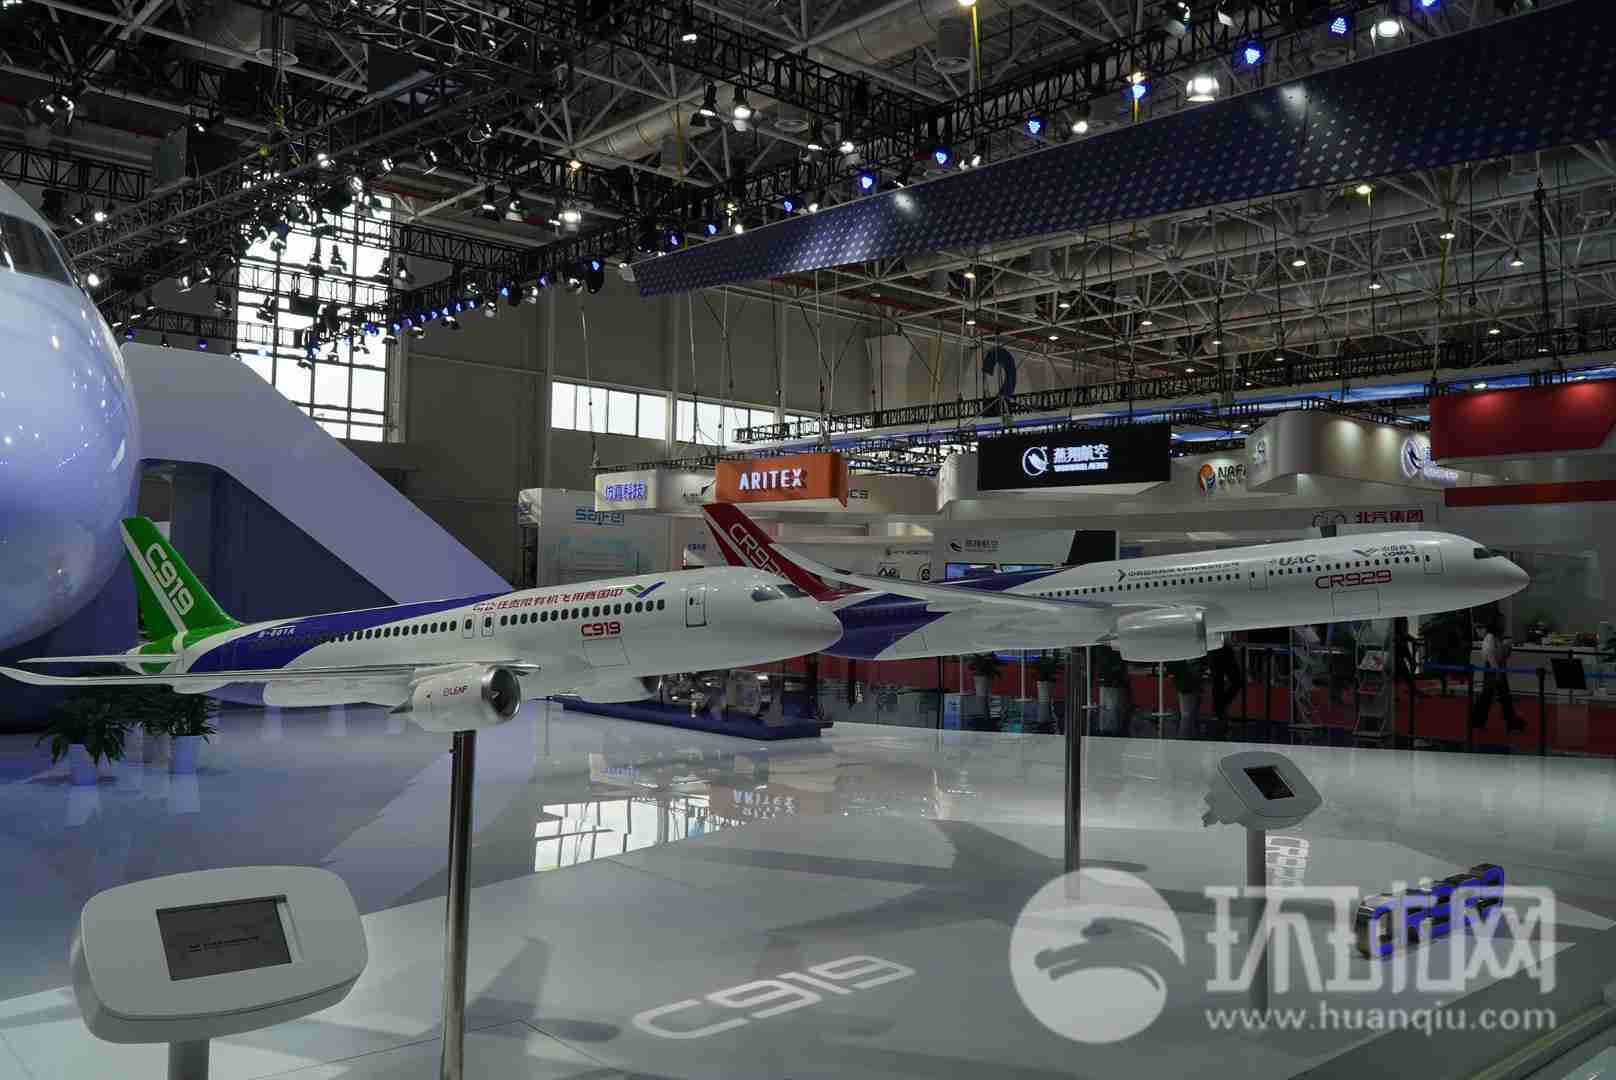 中国商飞展示了中国国产大飞机c919和c929的同比例模型,可以直观感受